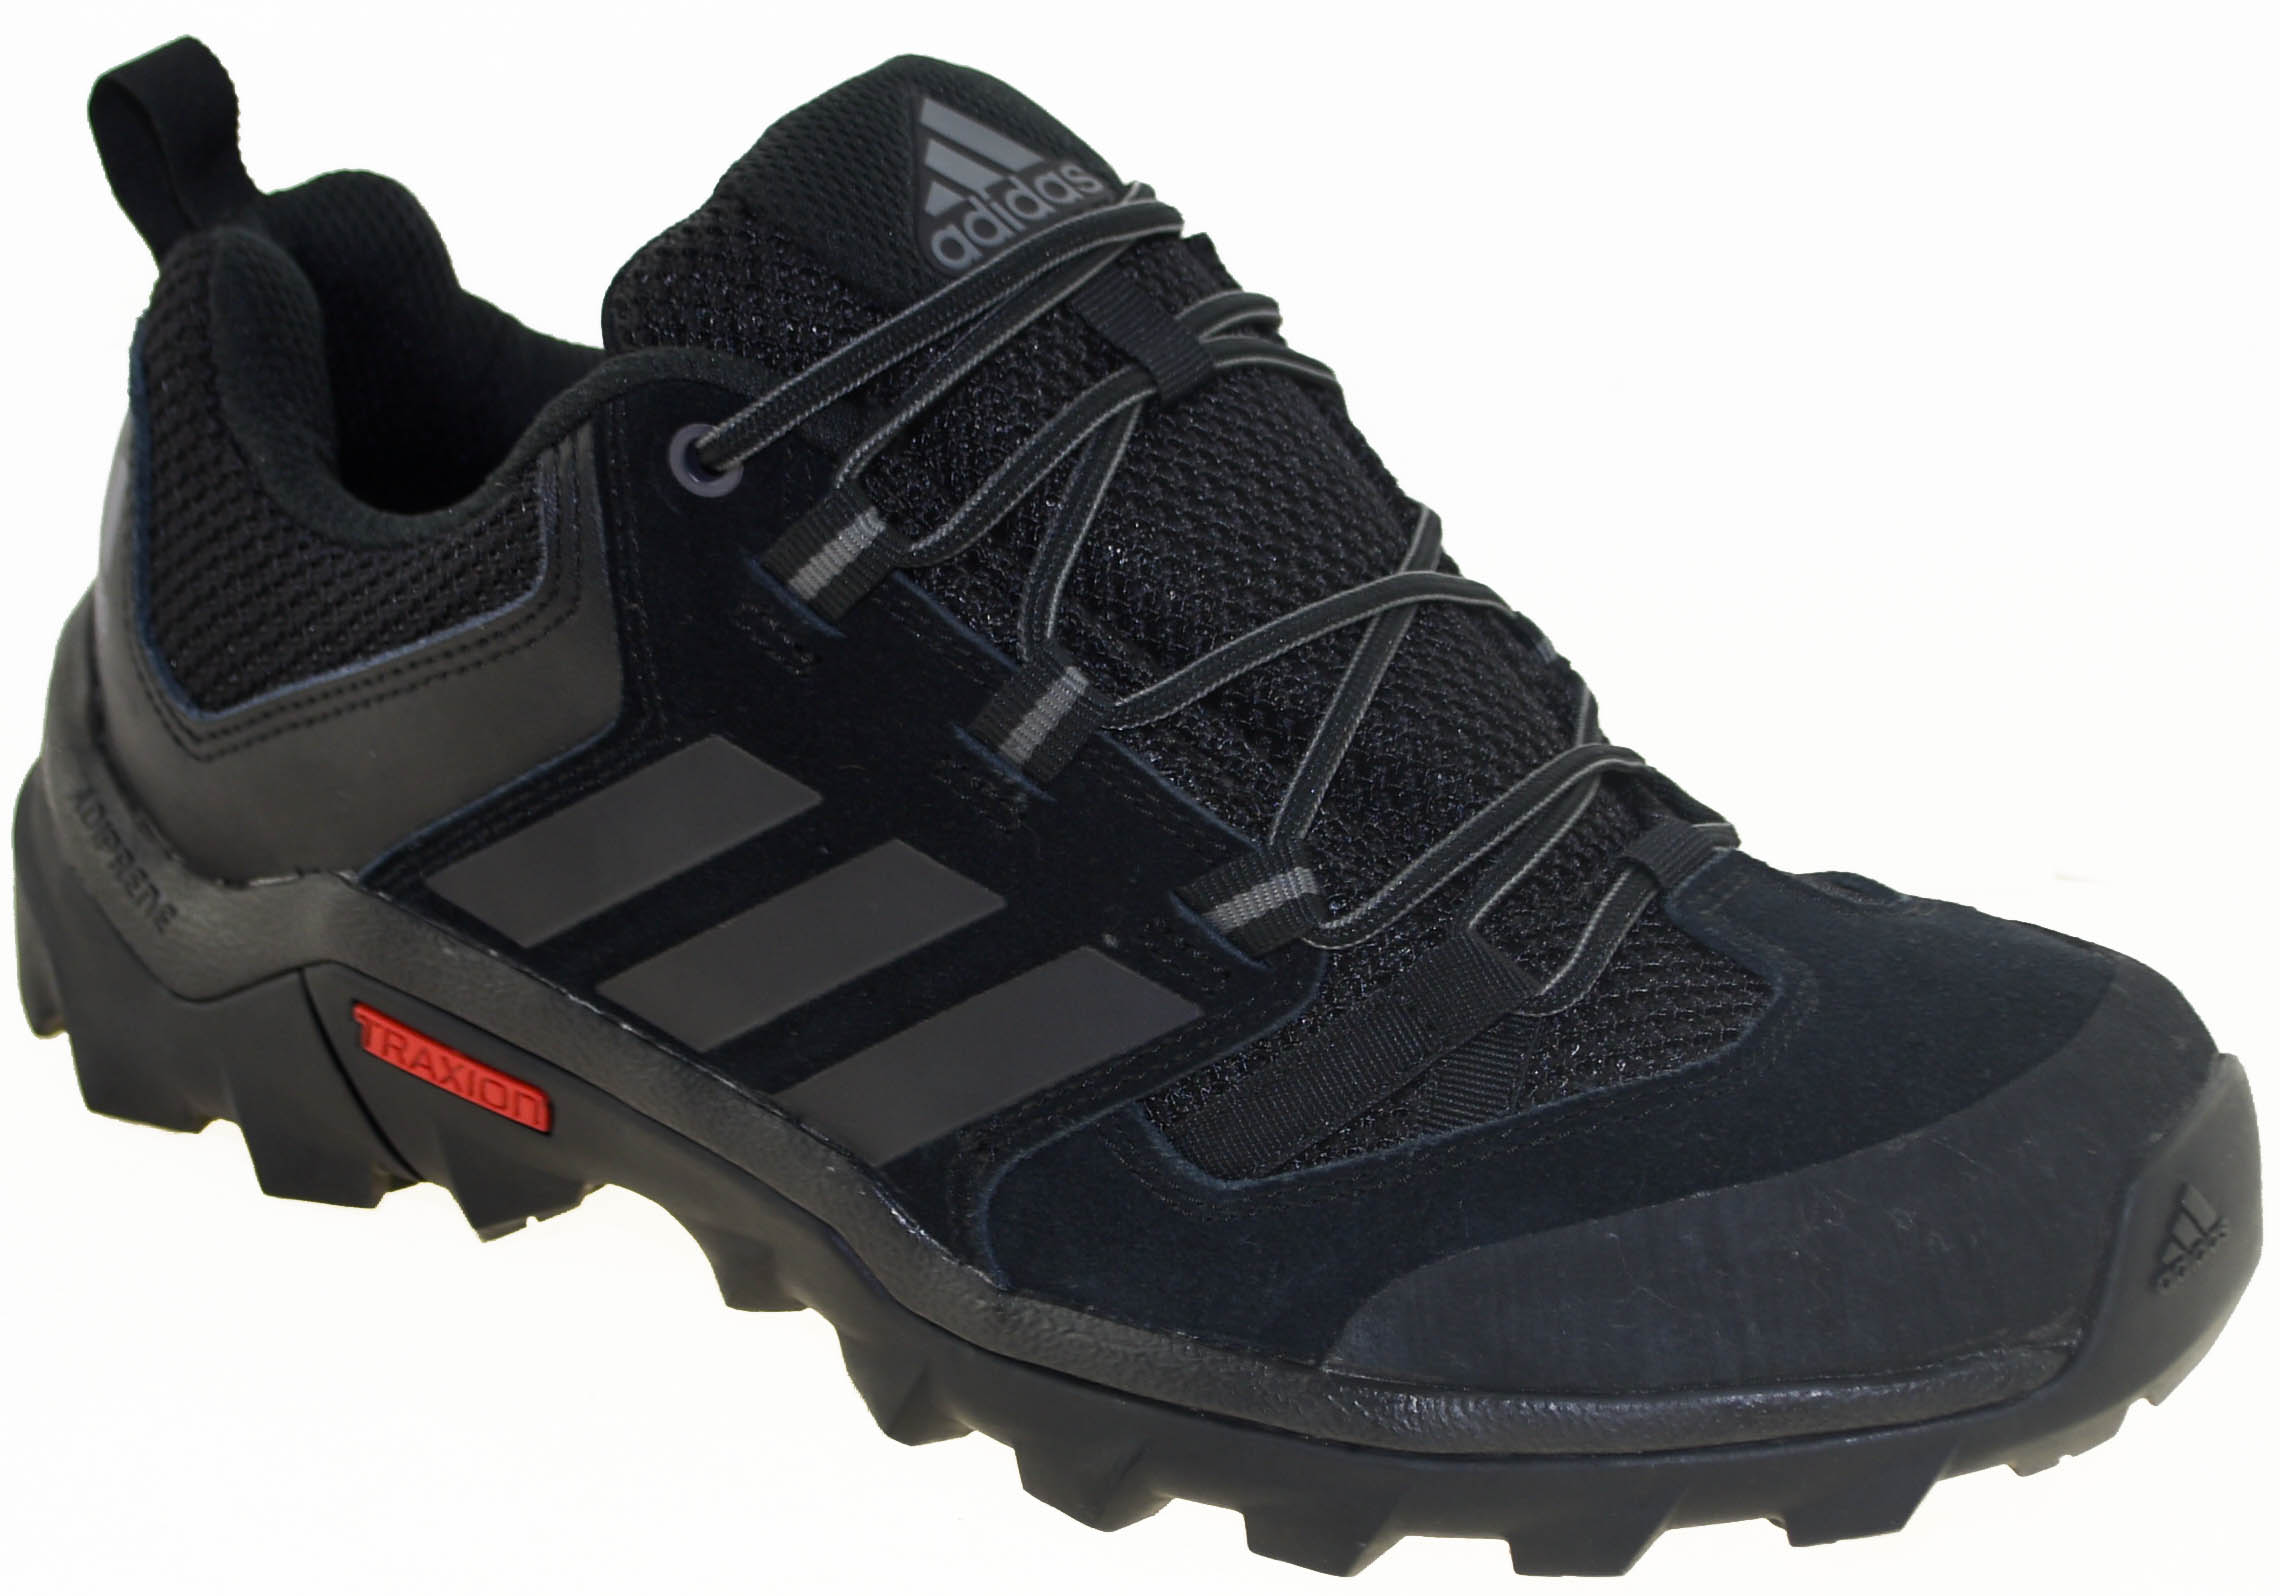 Adidas Men's Caprock Hiking Shoe Style AF6097 Black | eBay